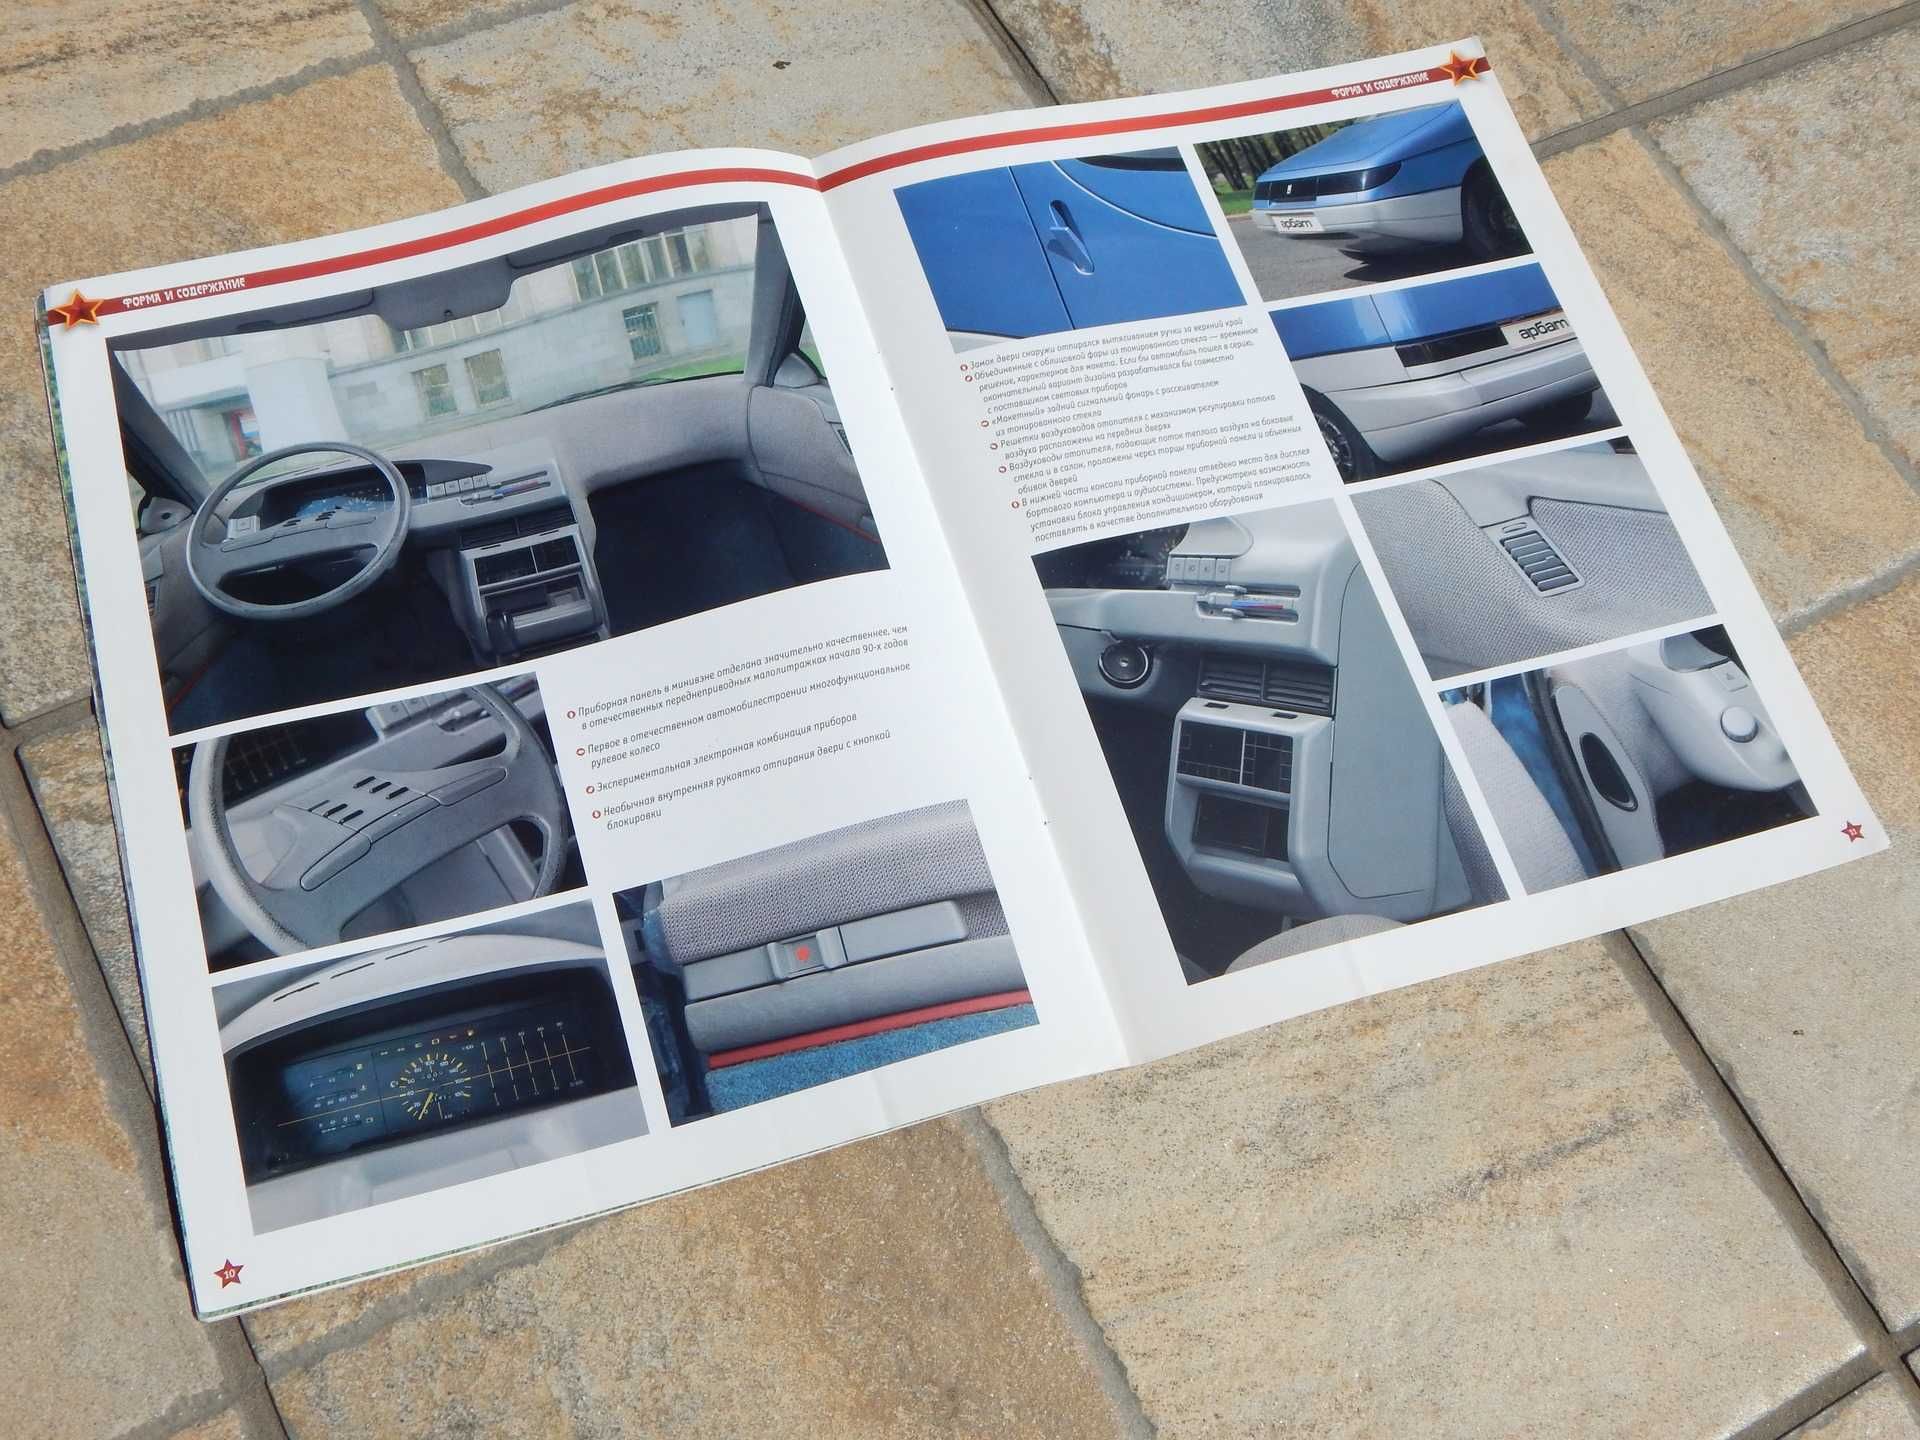 Revista prezentare istorie si detalii tehnice auto Moskvich 2139 Arbat